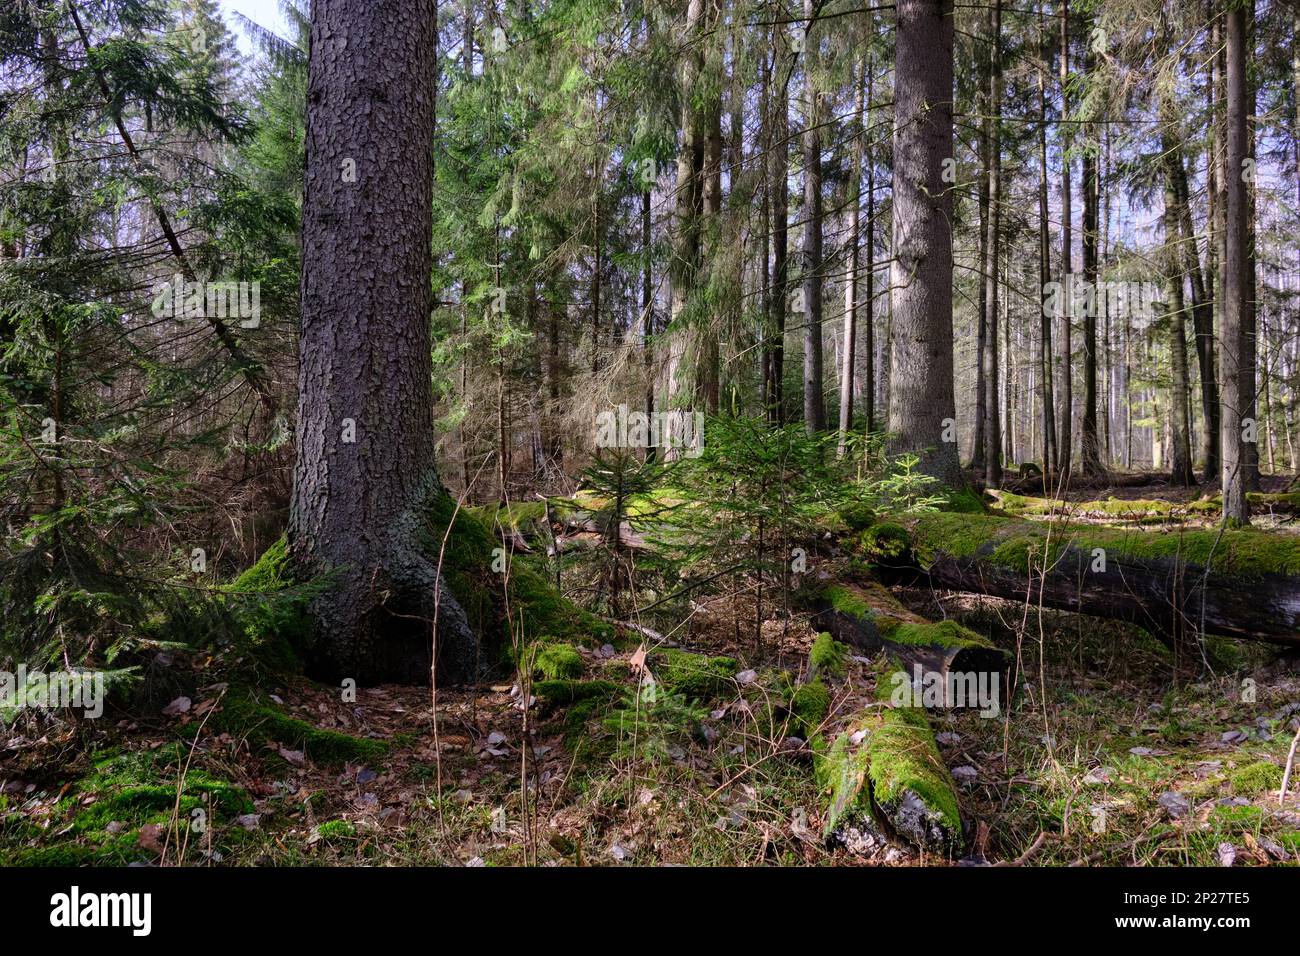 Peuplement de conifères avec épicéa en premier plan avec quelques brisures à côté de l'hiver, forêt de Bialowieza, Pologne, Europe Banque D'Images